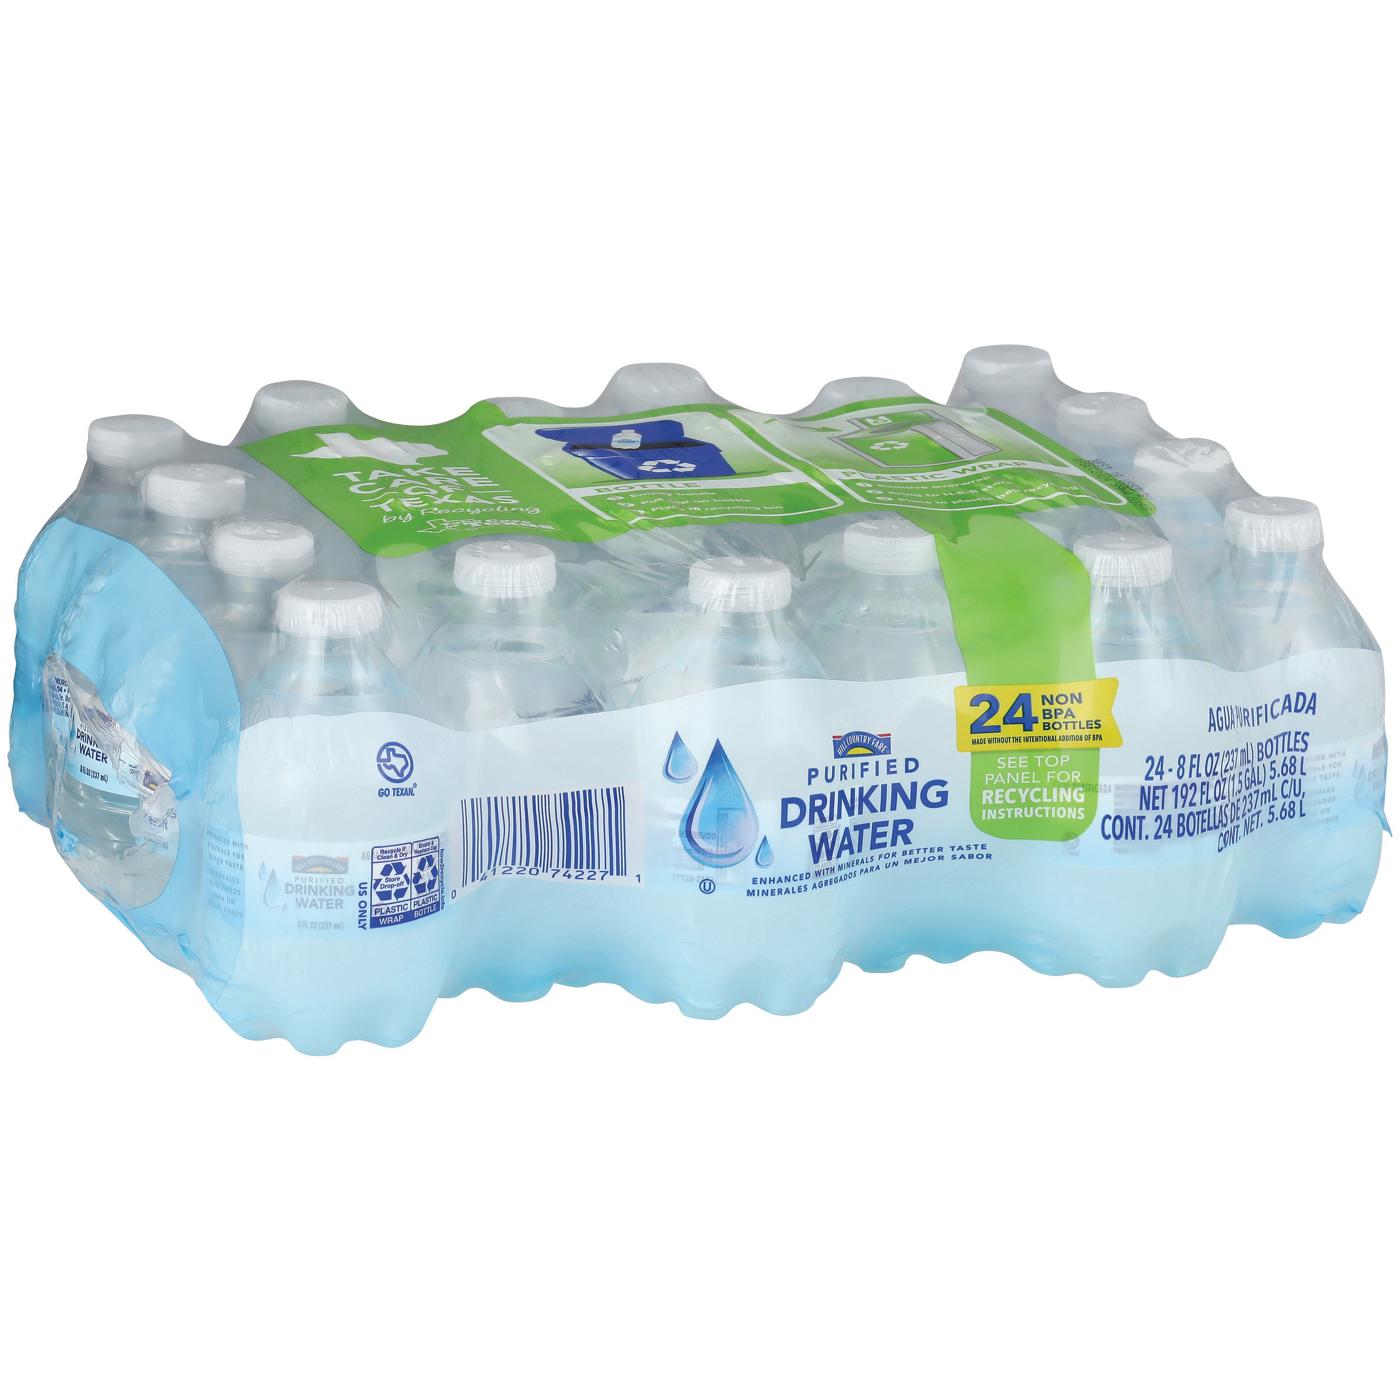 DASANI Purified Water Bottles, 12 fl oz, 8 Pack